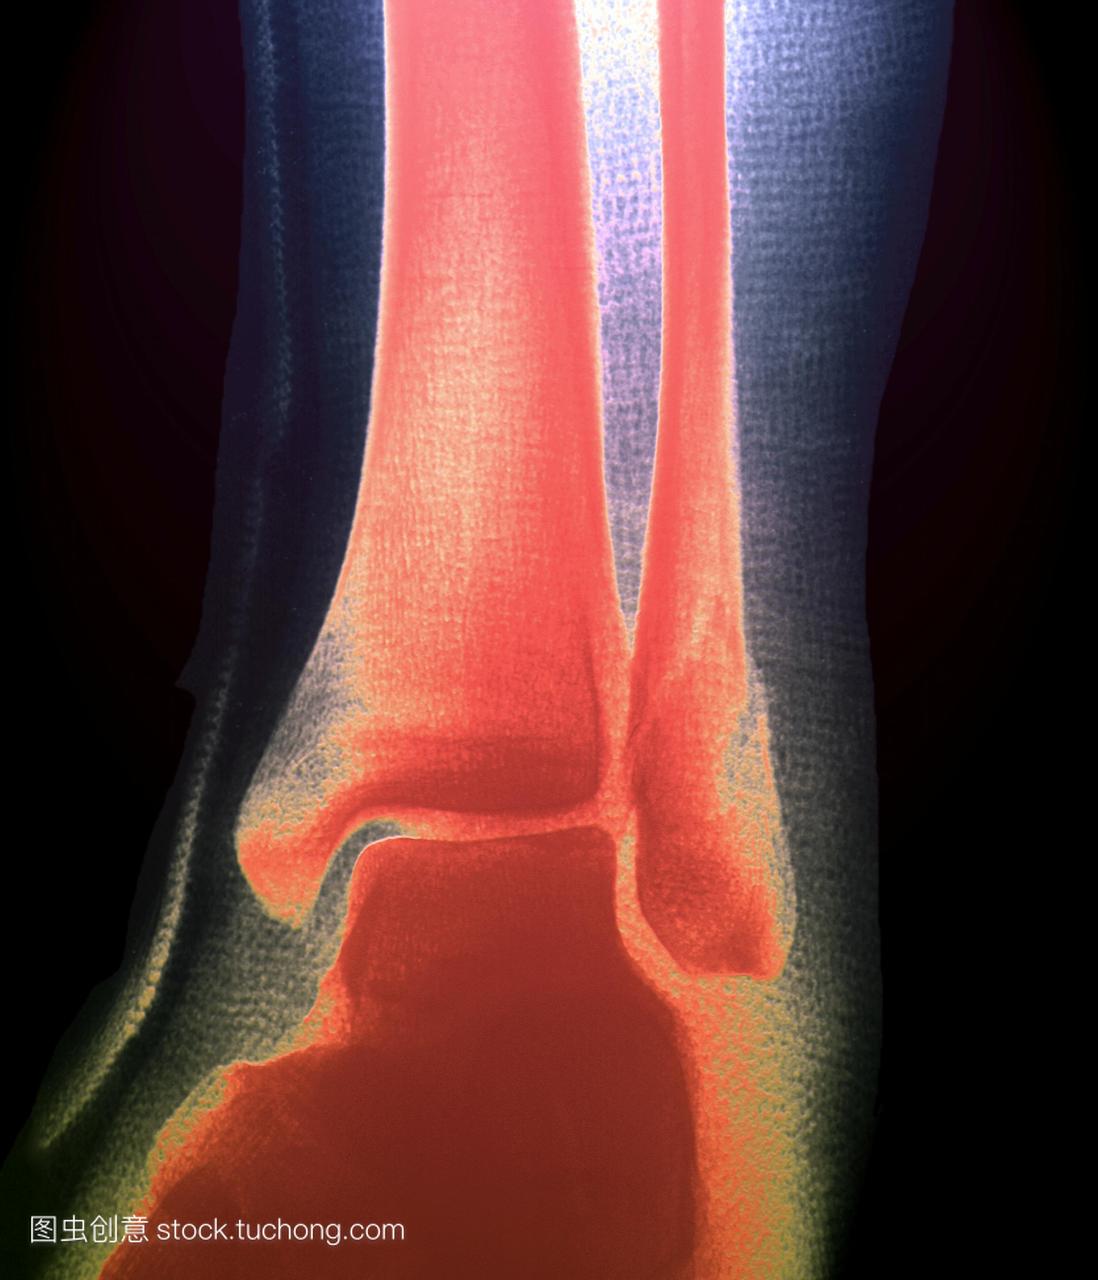 破碎的小腿骨头。彩色的x射线的病人的左脚踝